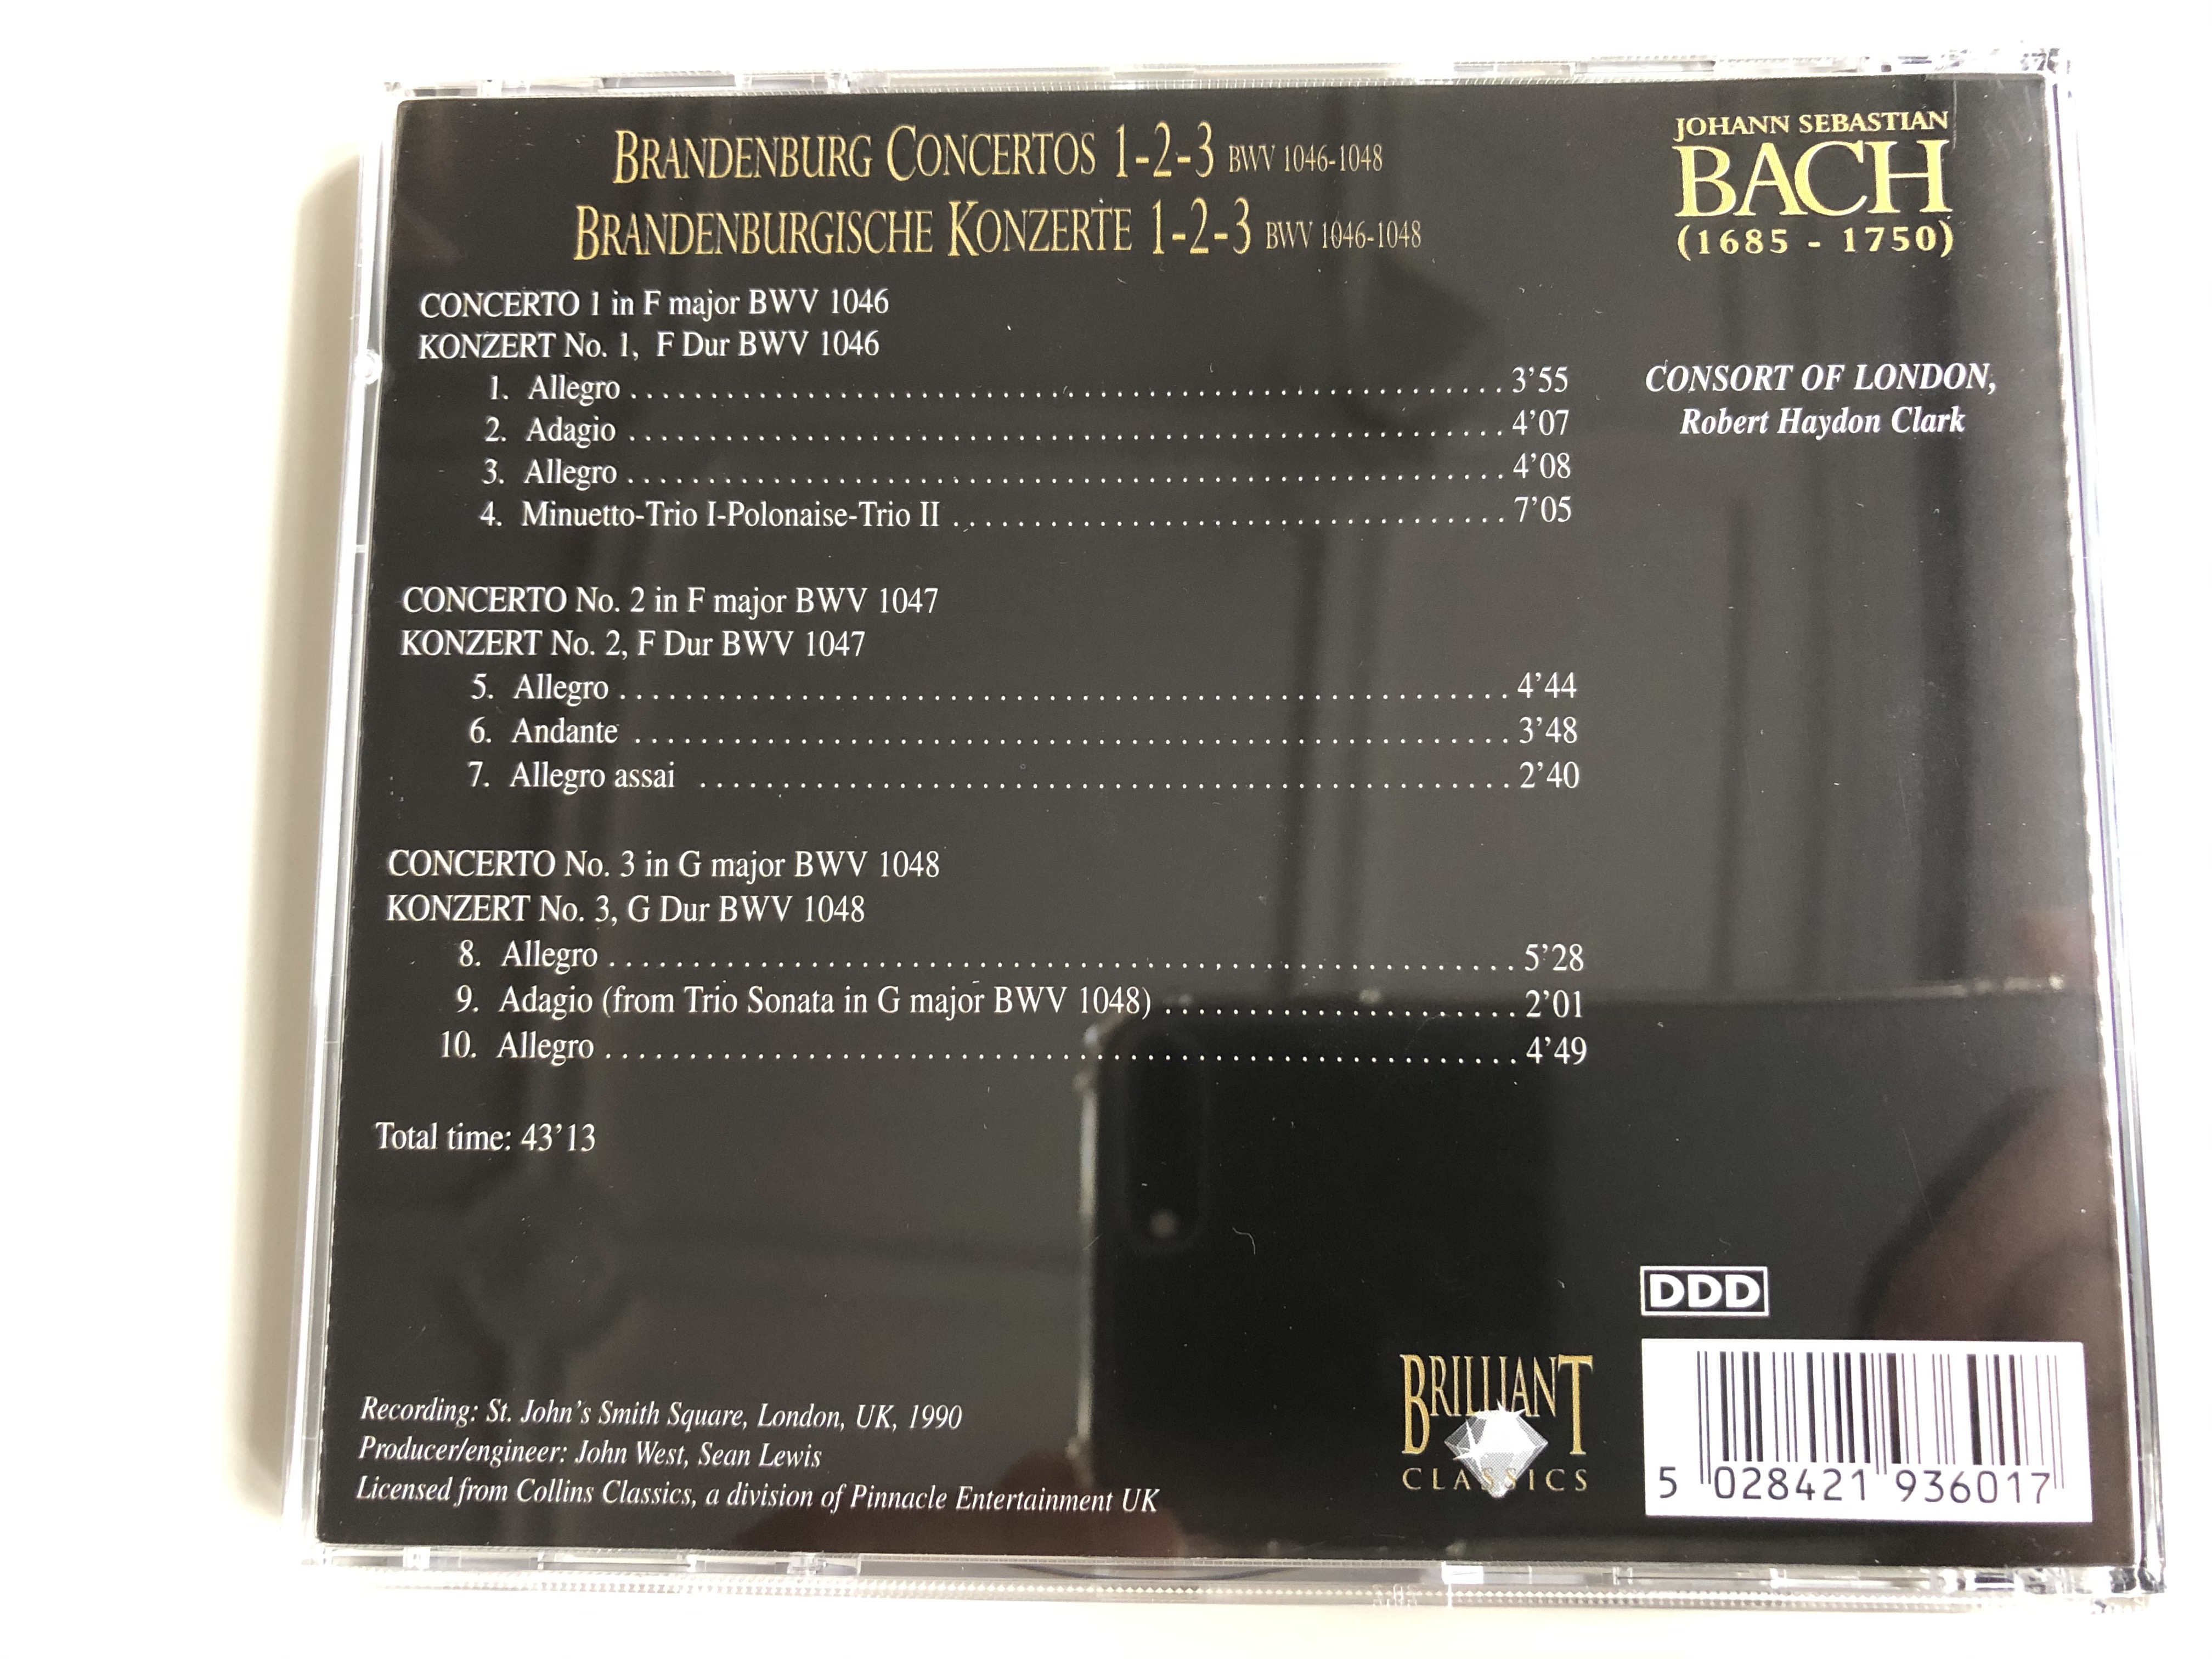 bach-edition-brandenburg-concertos-1-2-3-brandenburgische-konzerte-1-2-3-brilliant-classics-audio-cd-993601-3-.jpg